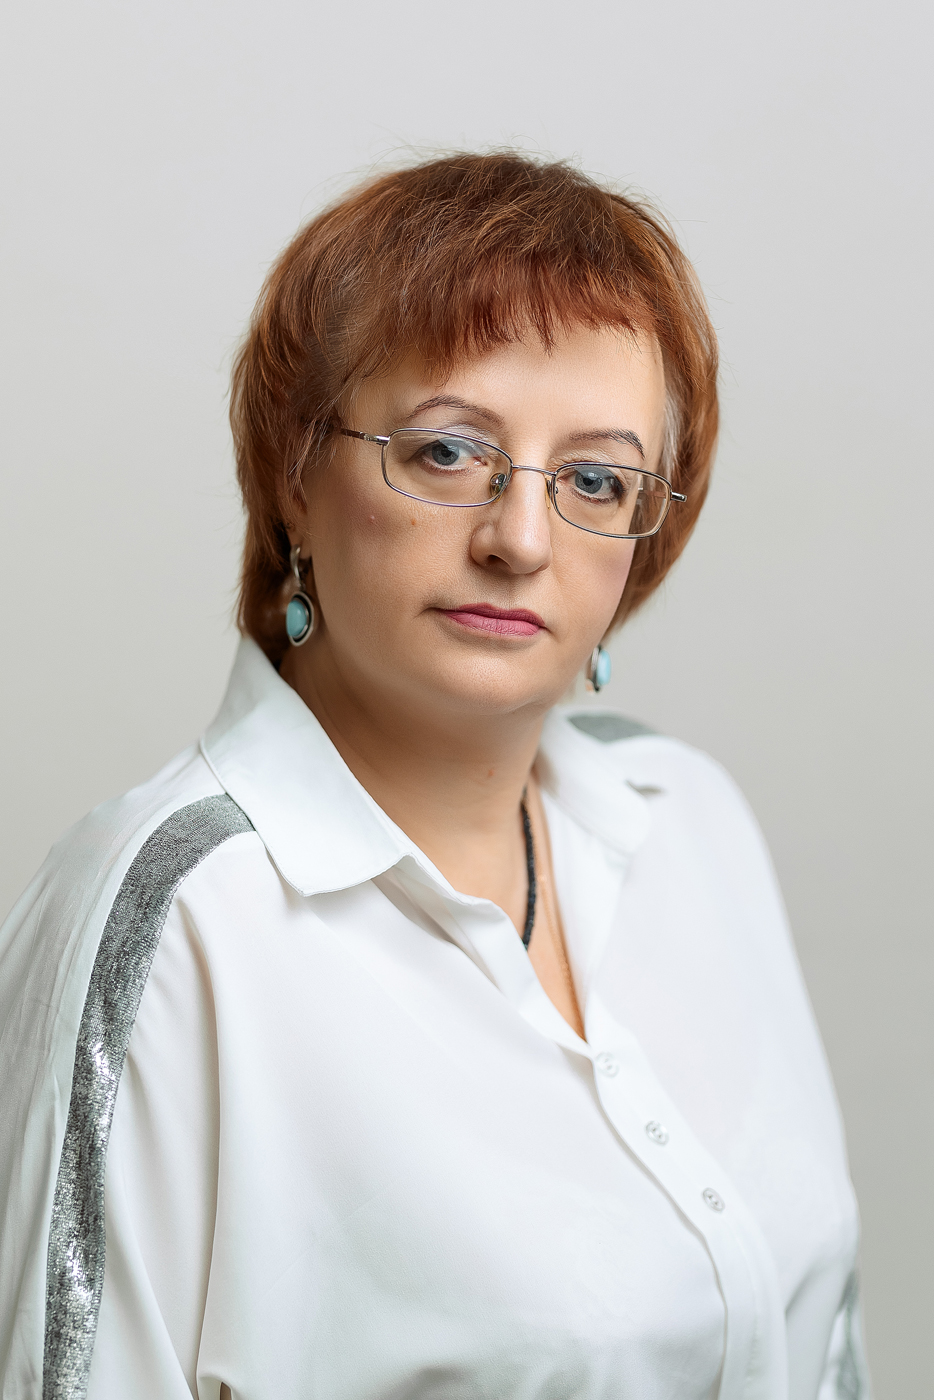 ВОЛКОВА Татьяна Владимировна (24 октября 1967 года).